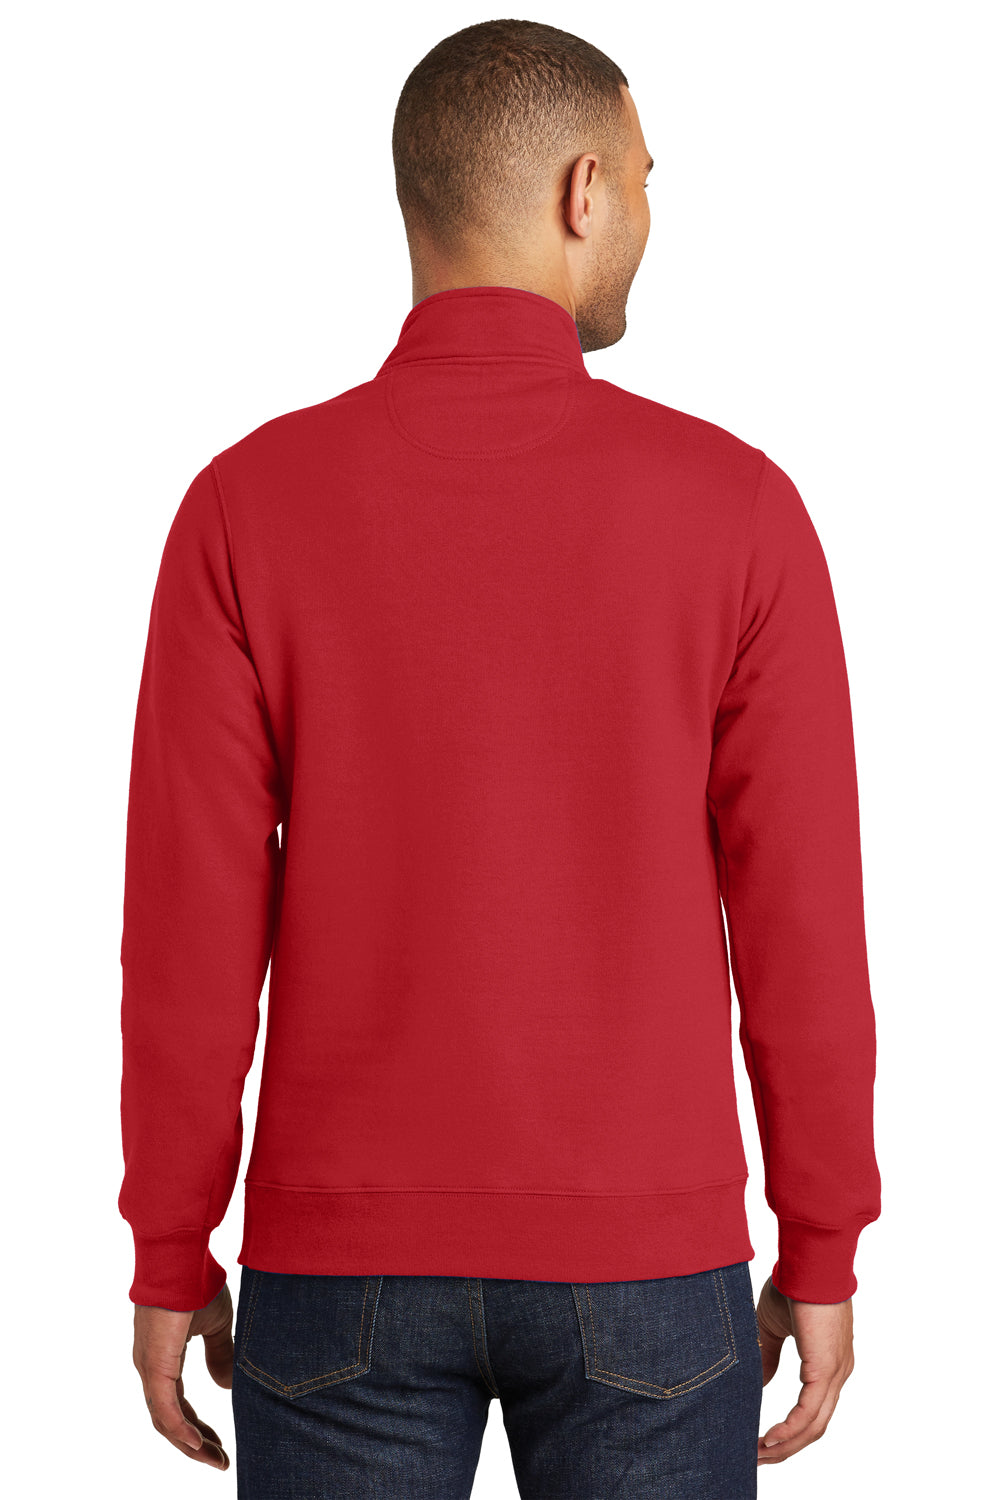 Port & Company PC850Q Mens Fan Favorite Fleece 1/4 Zip Sweatshirt Red Back